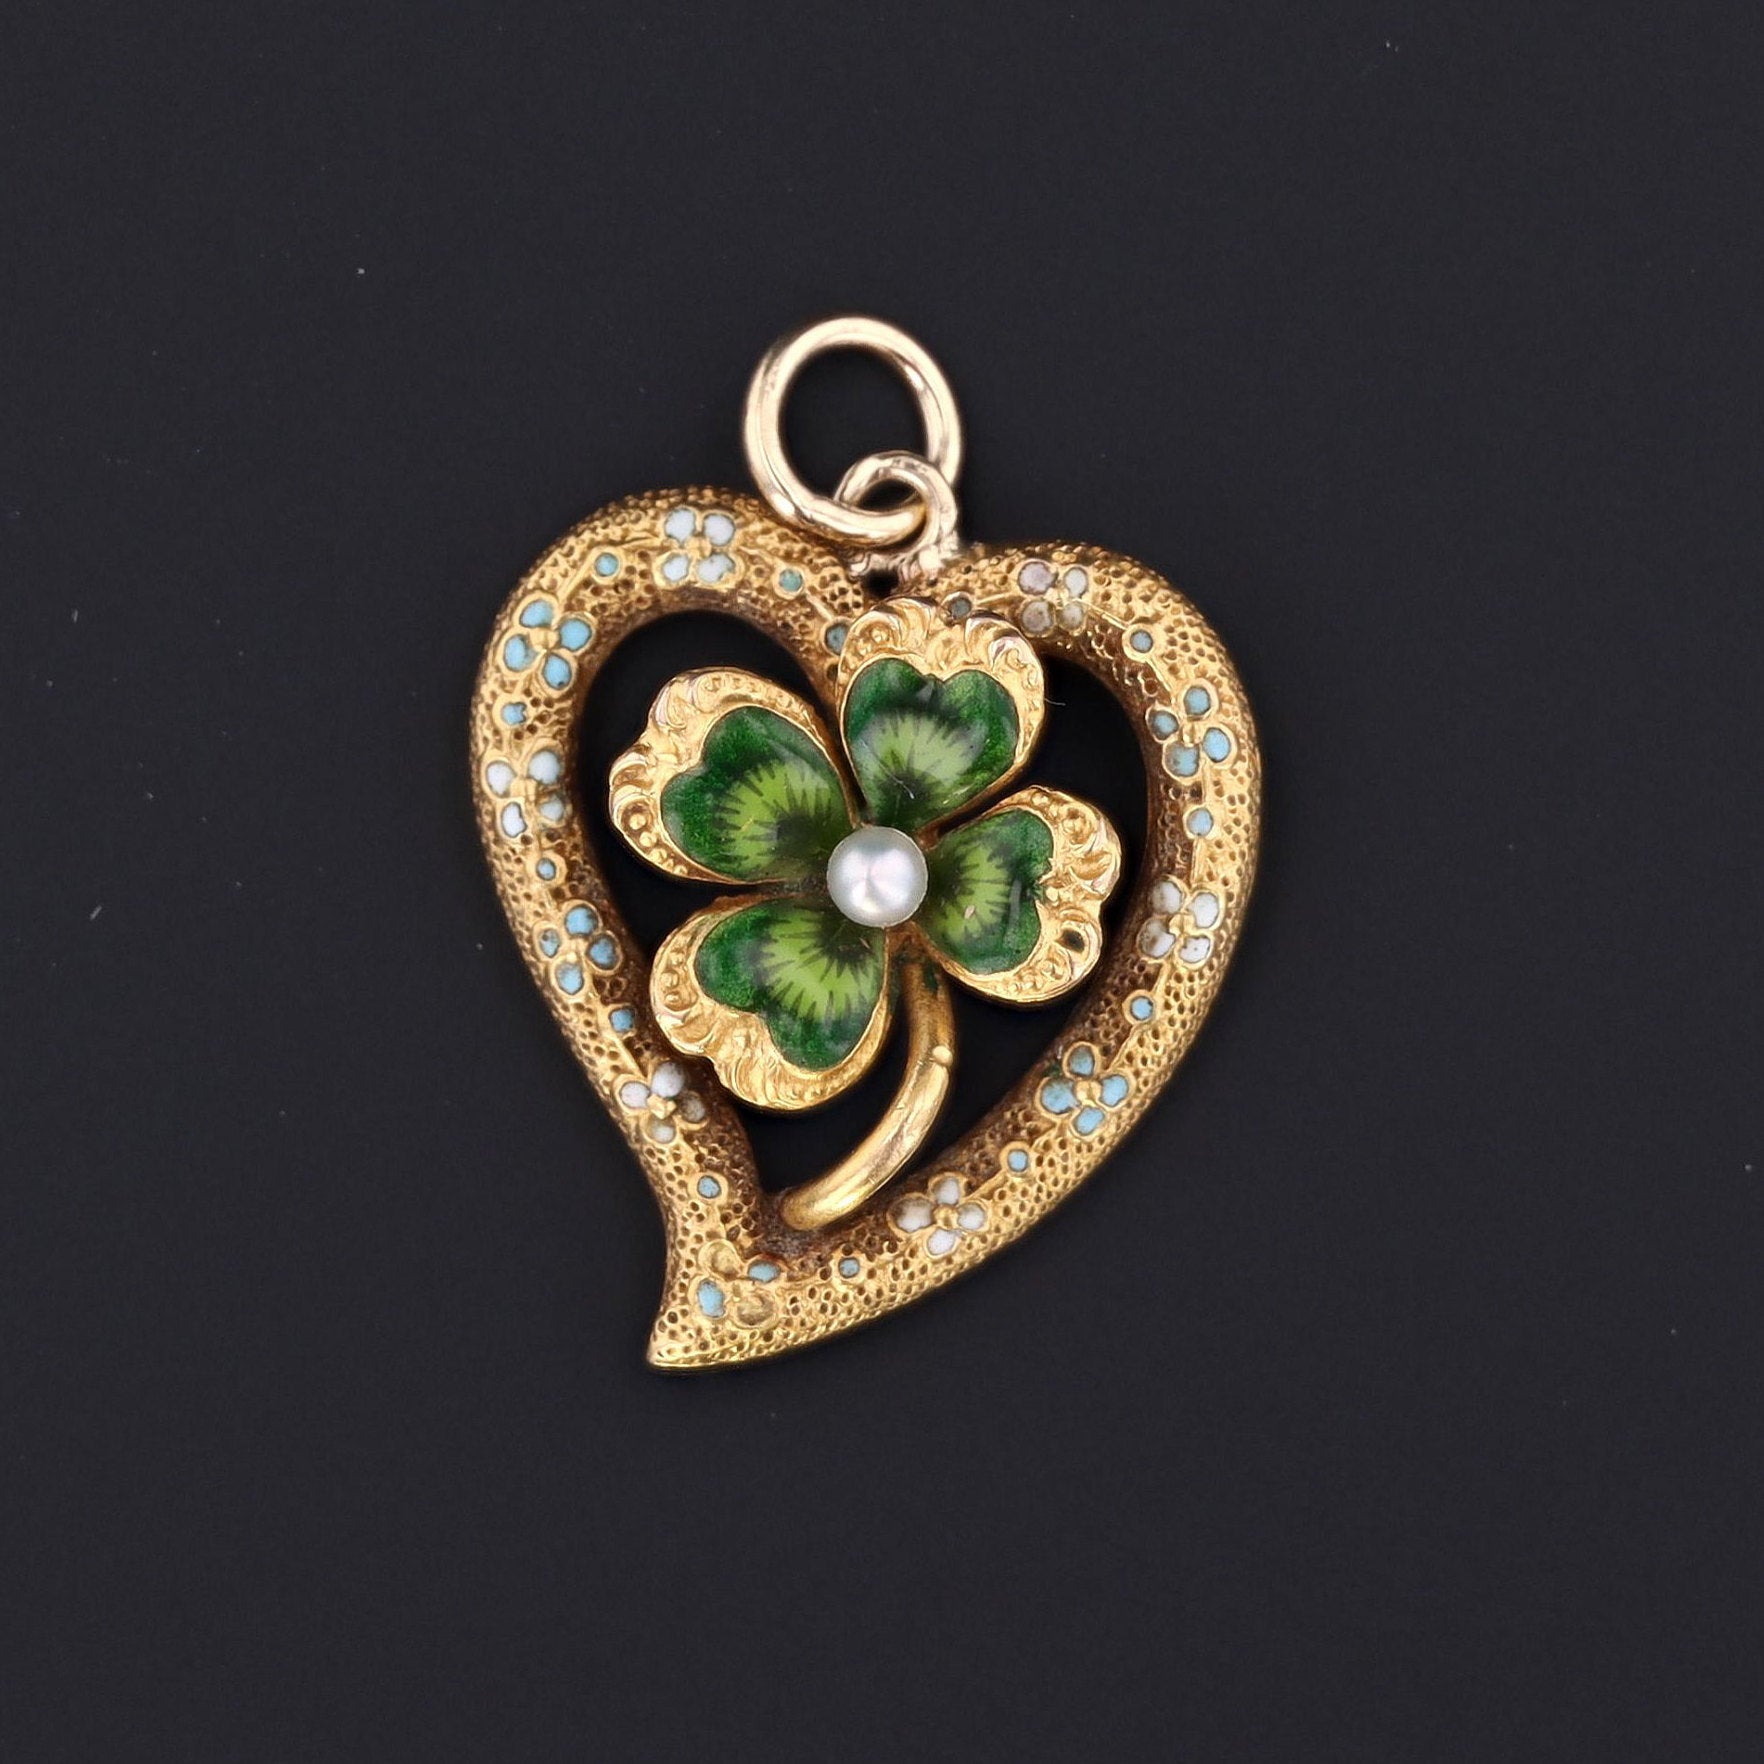 Four Leaf Clover Pendant | Enamel Clover Pendant | Heart Pendant | 14k Gold Pendant | Antique Pin Conversion